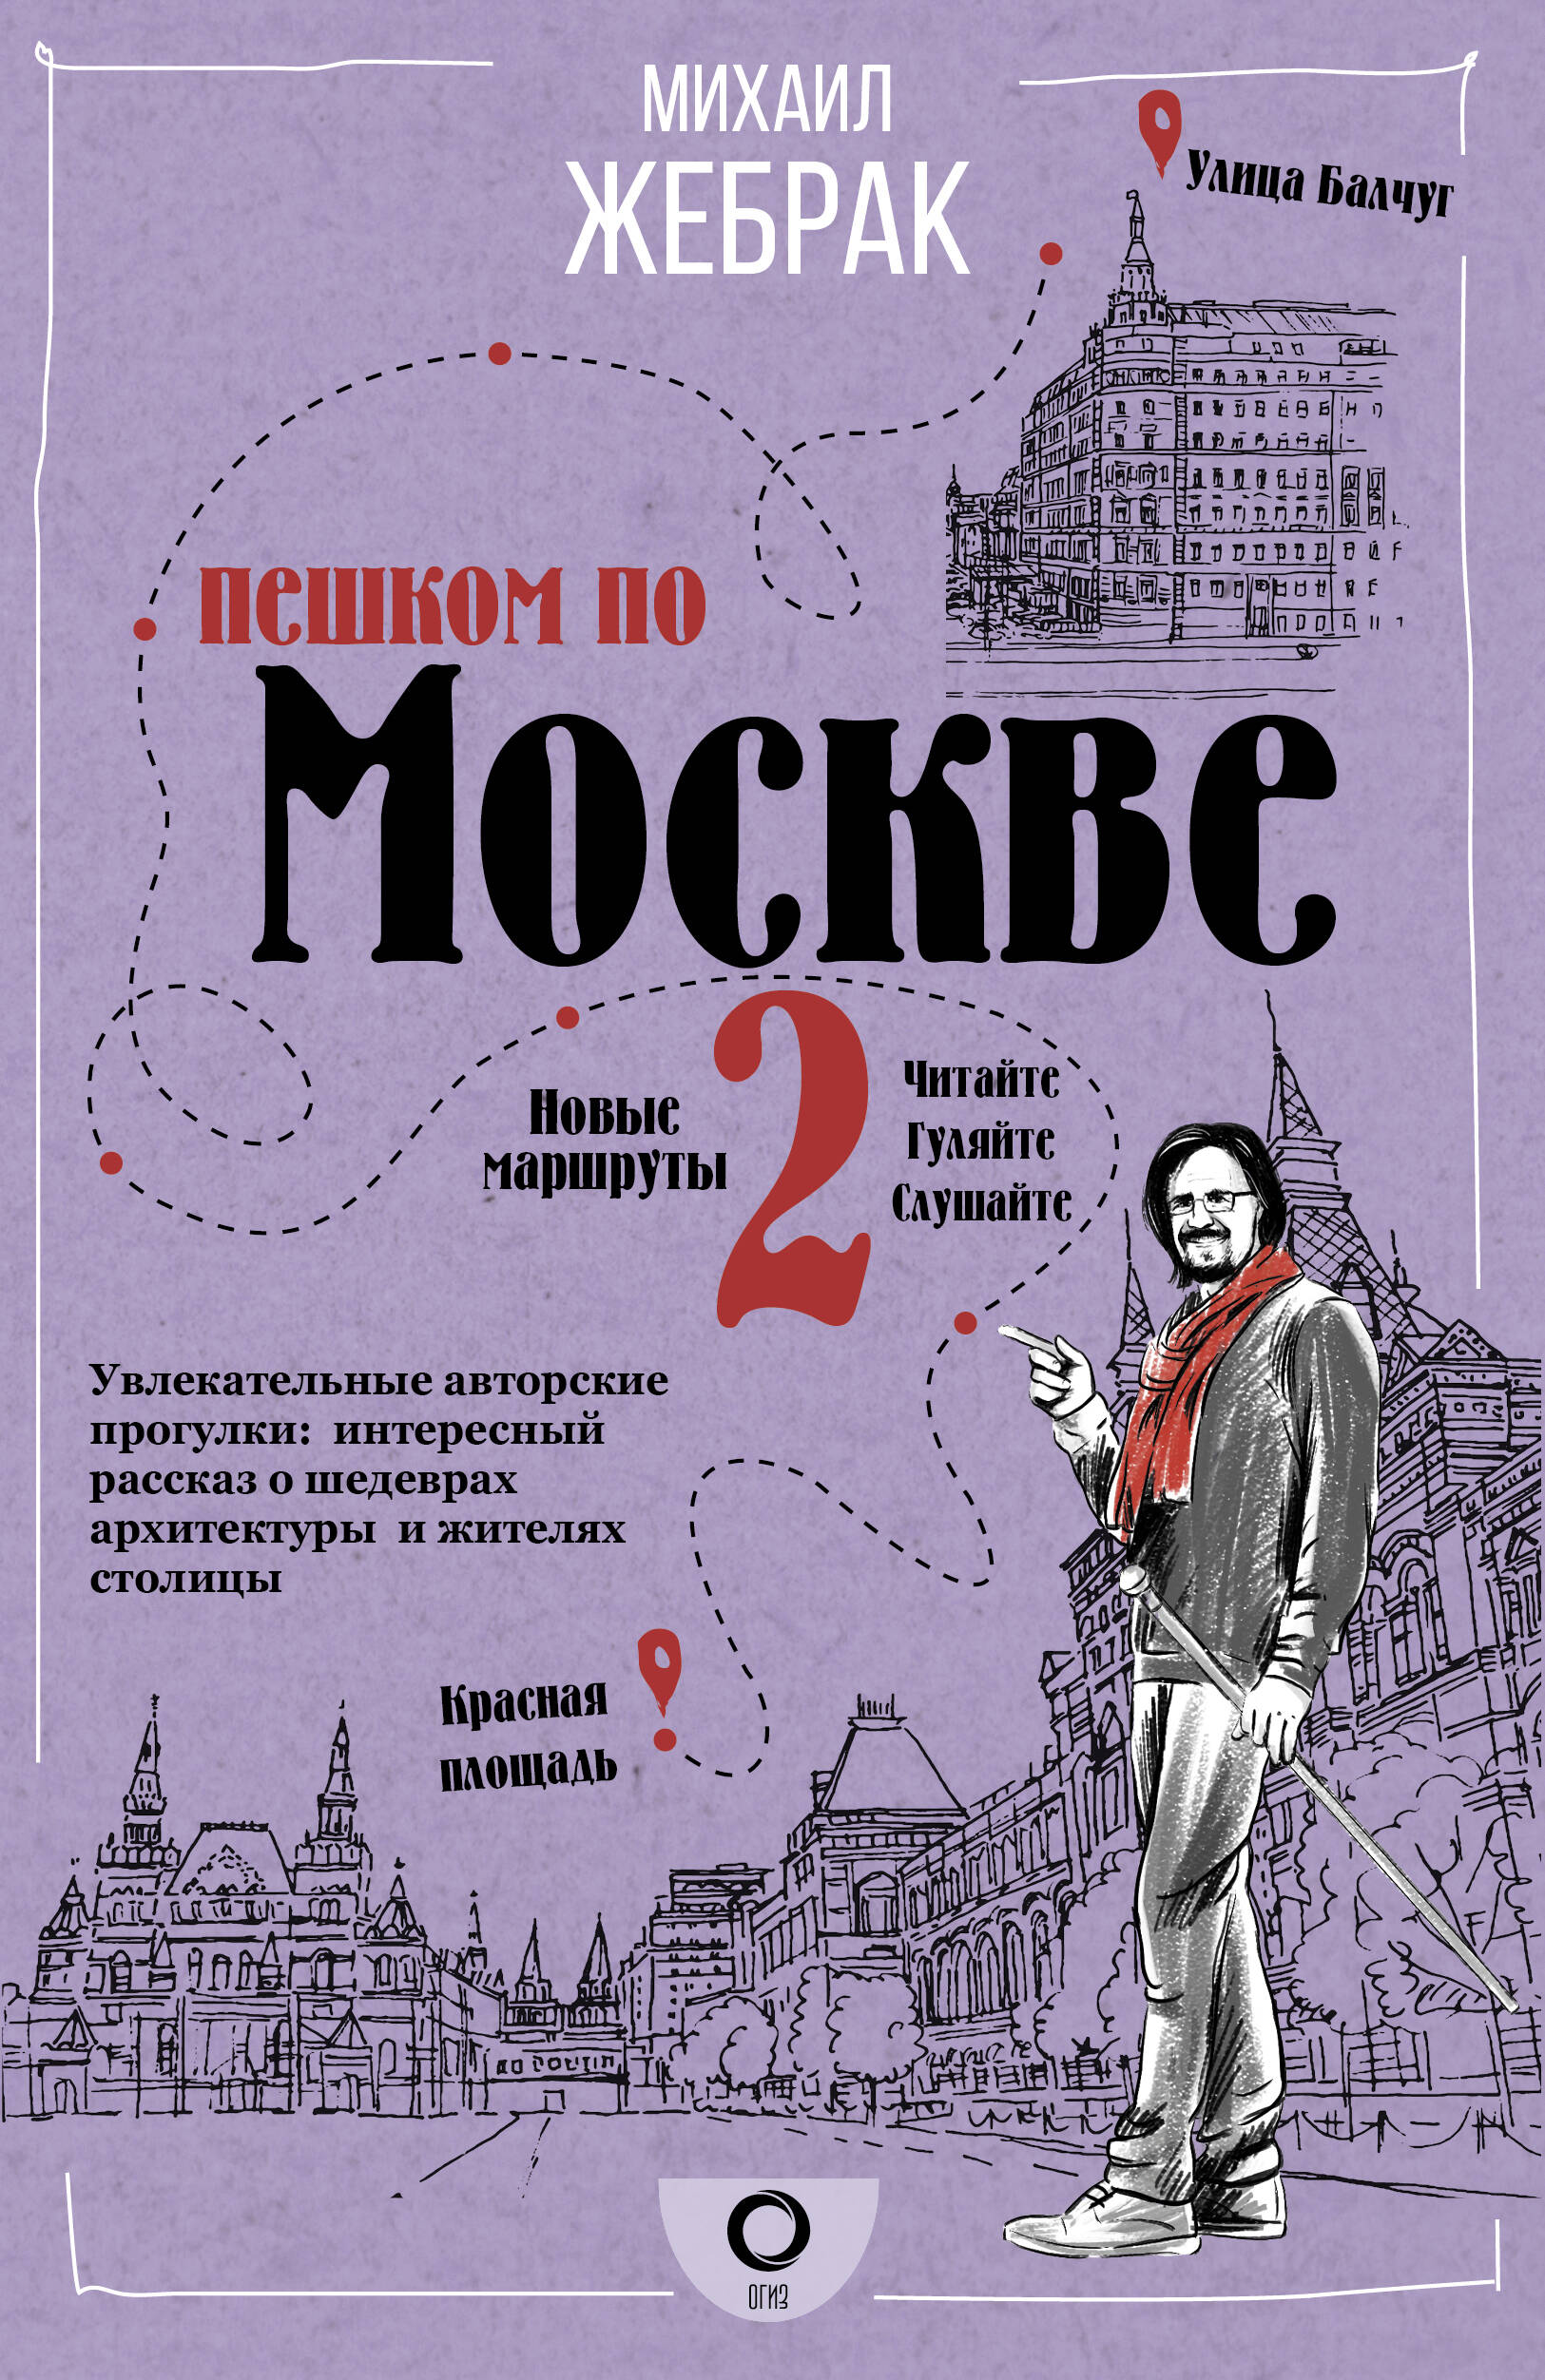 Жебрак Михаил Пешком по Москве 2 - страница 0